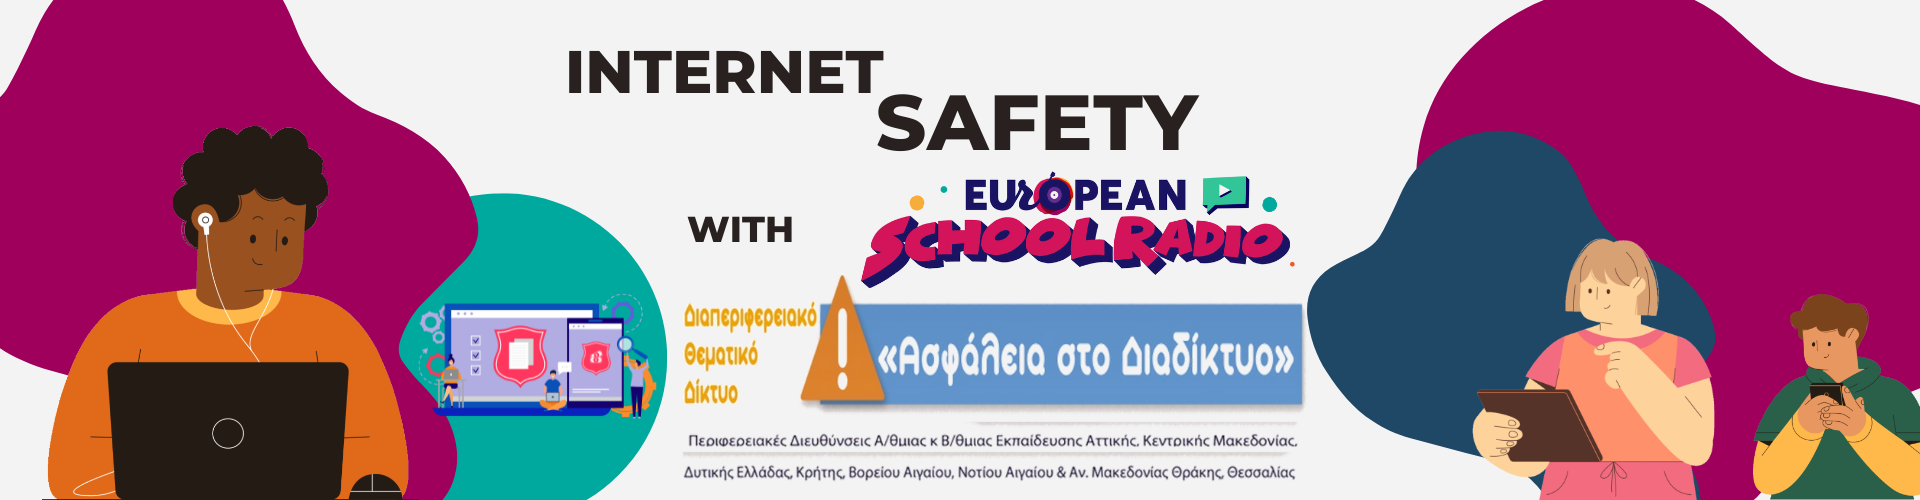 Internet Safety ESR isecurenet